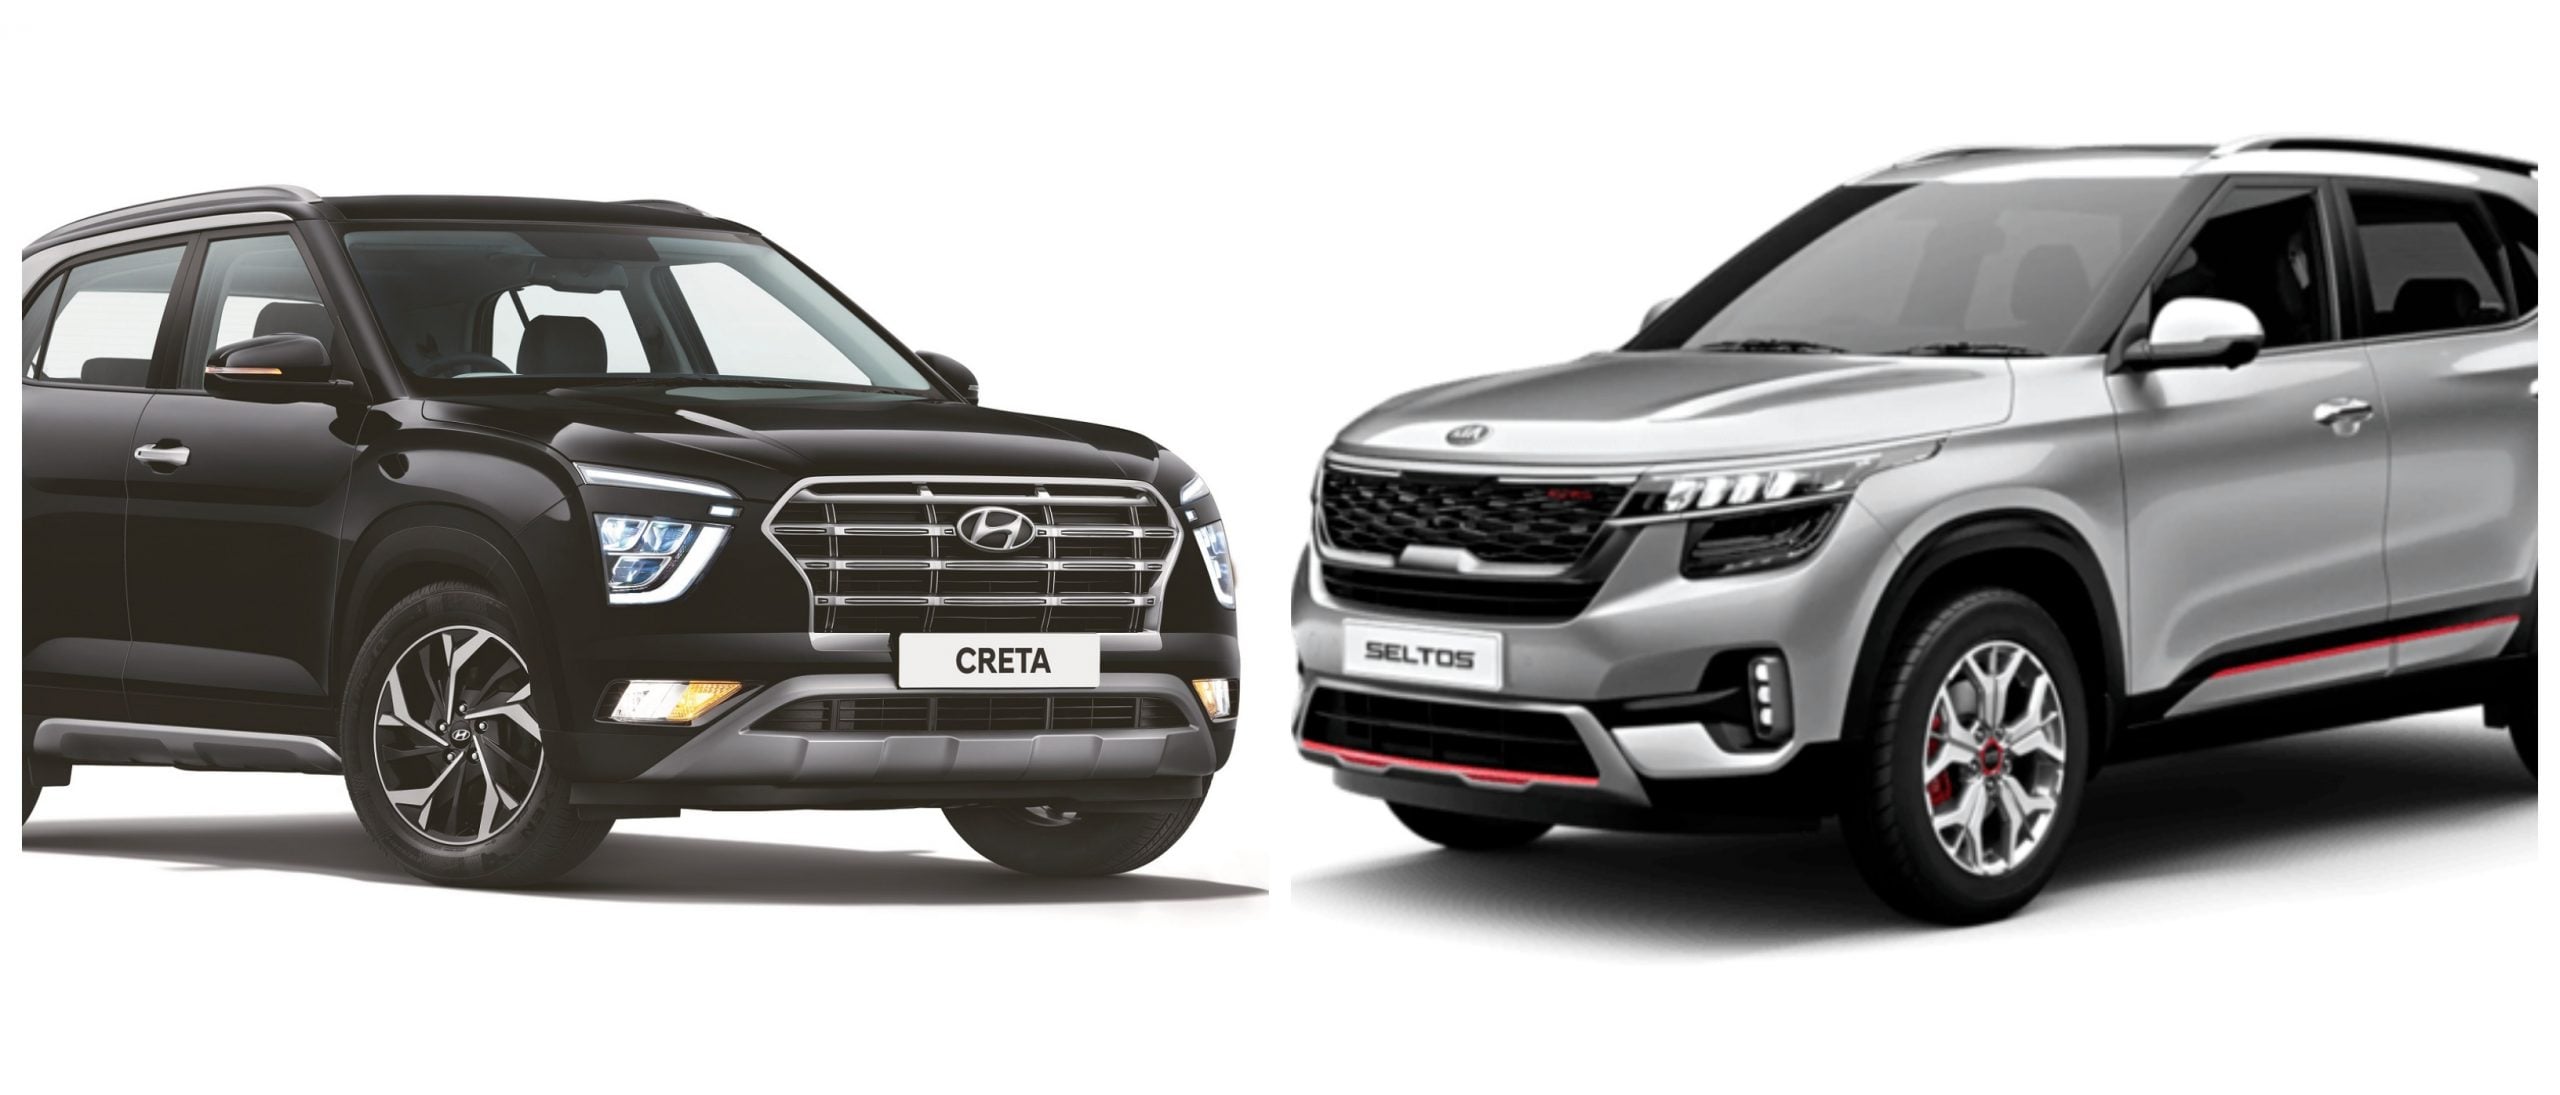 Hyundai Creta Top Model Price In India 2020